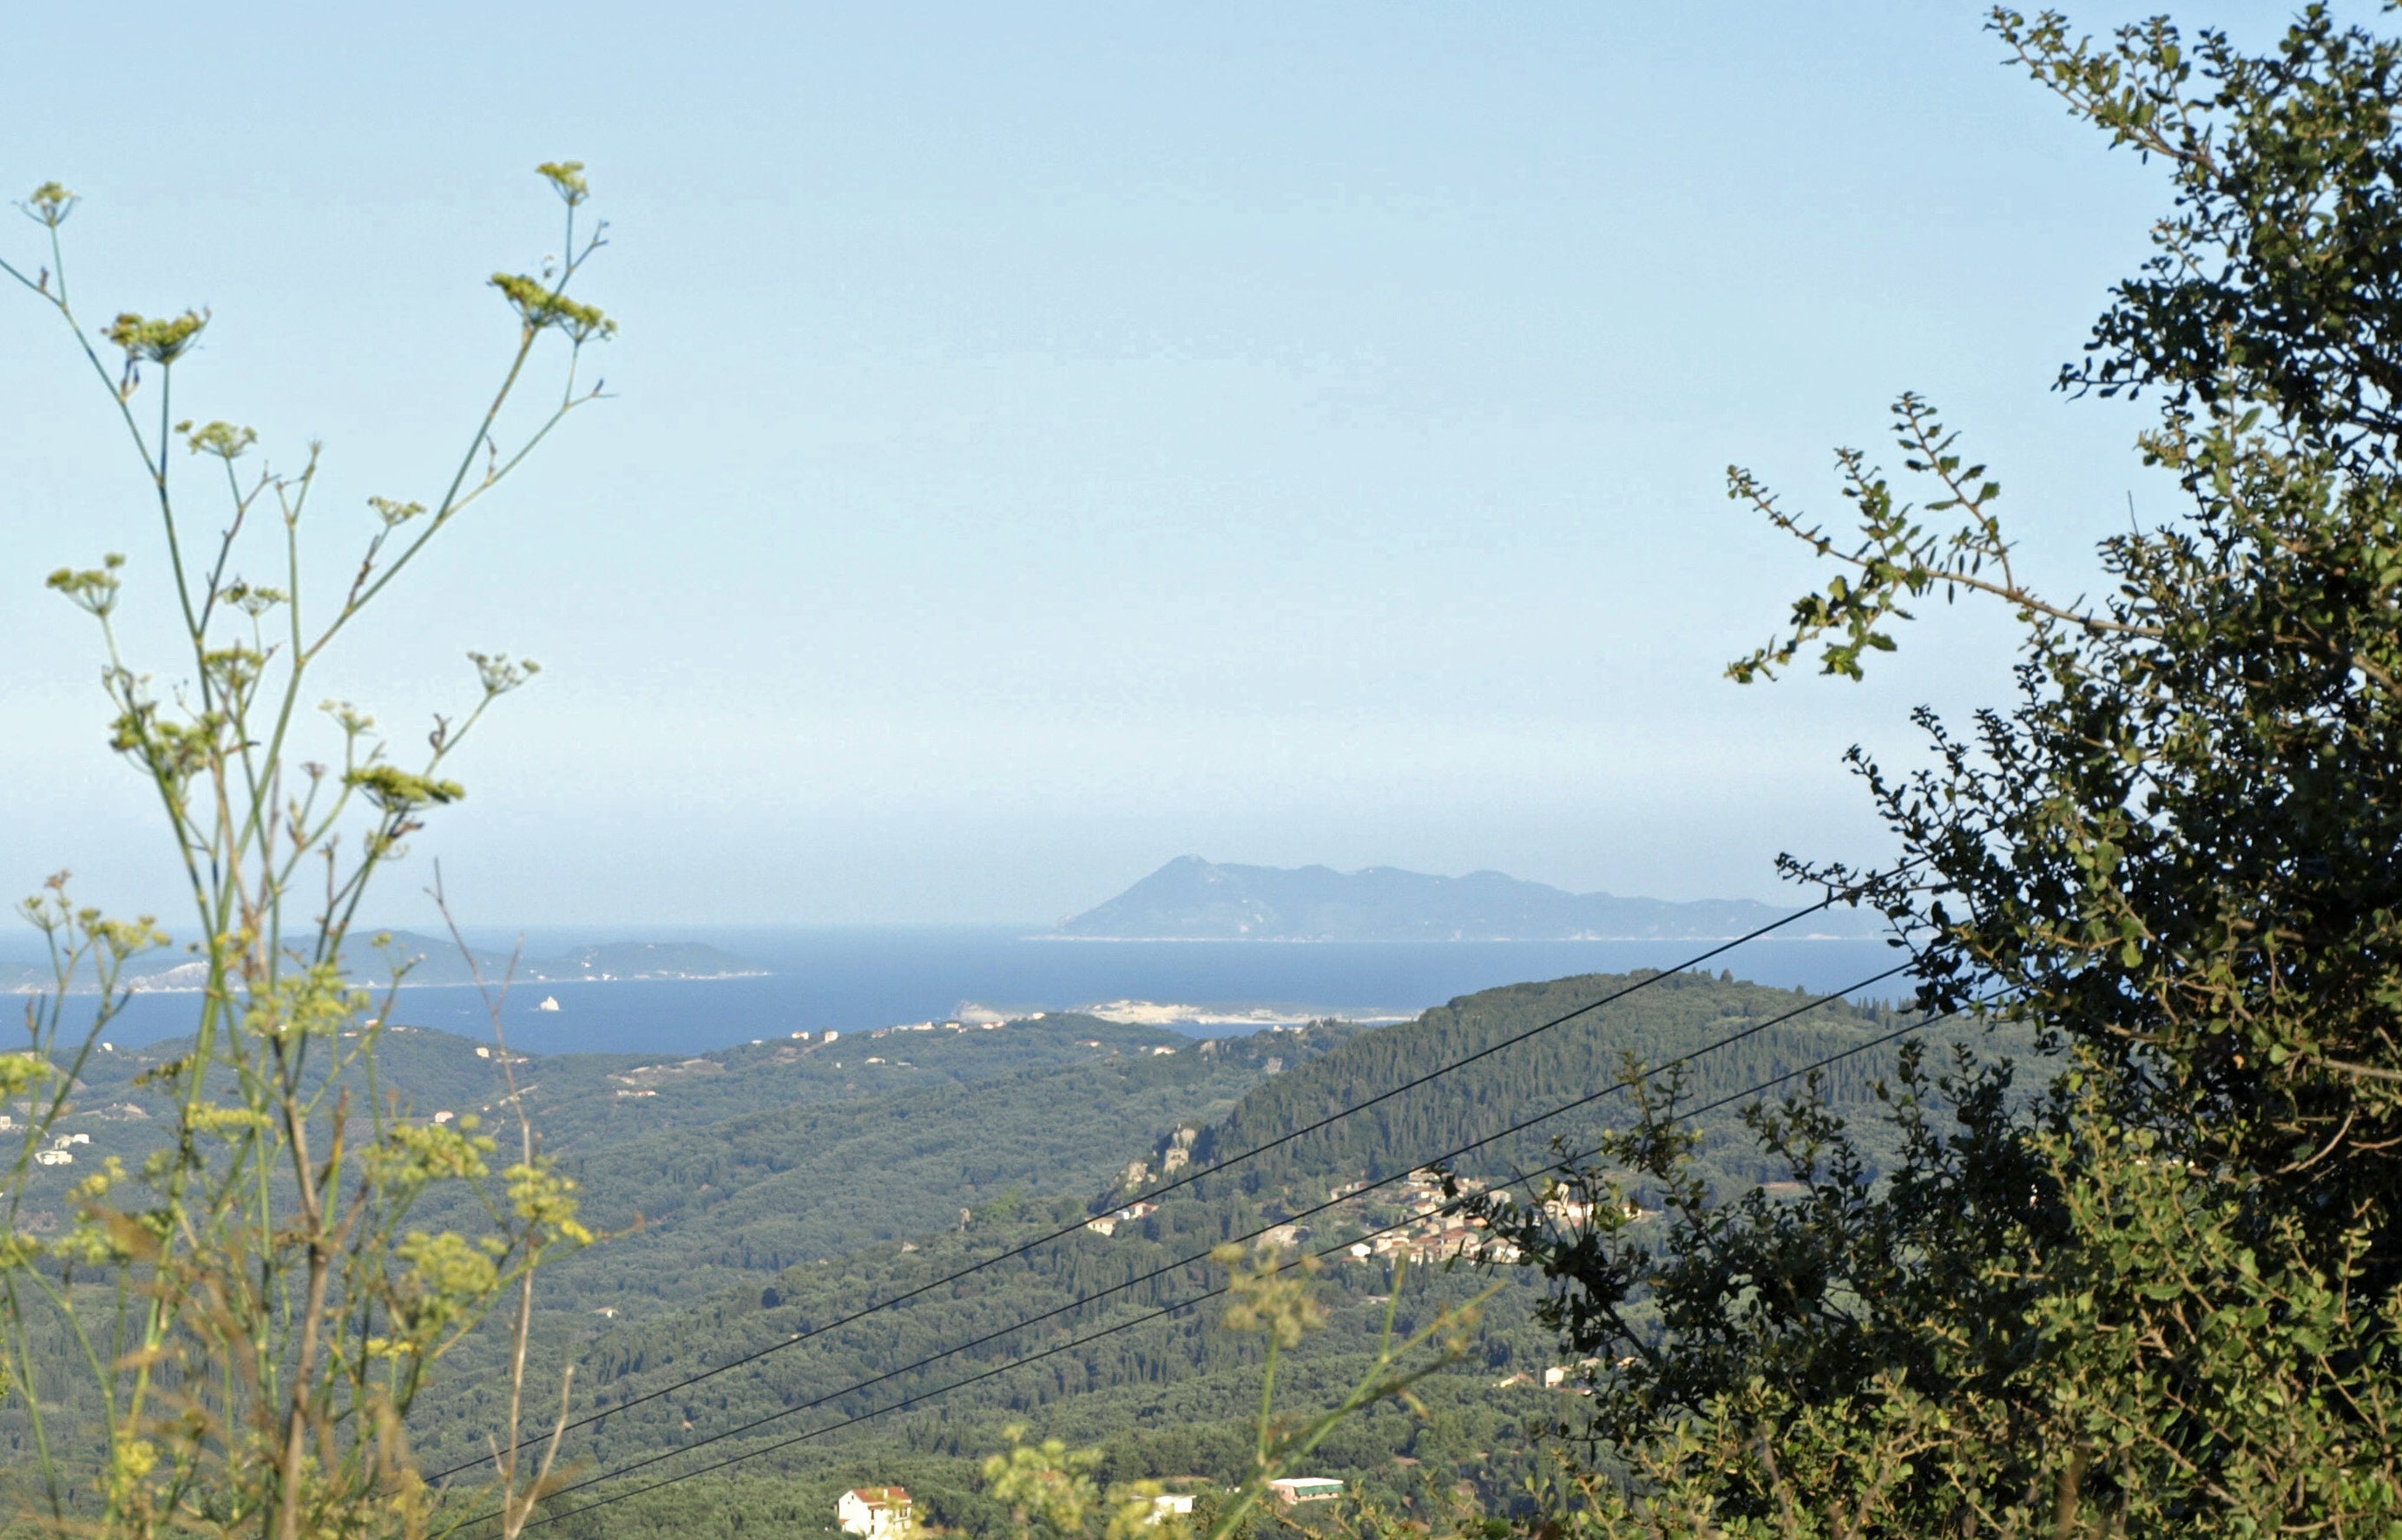 Auf den griechischen Inseln wurden in den letzten Tagen Touristen vermisst